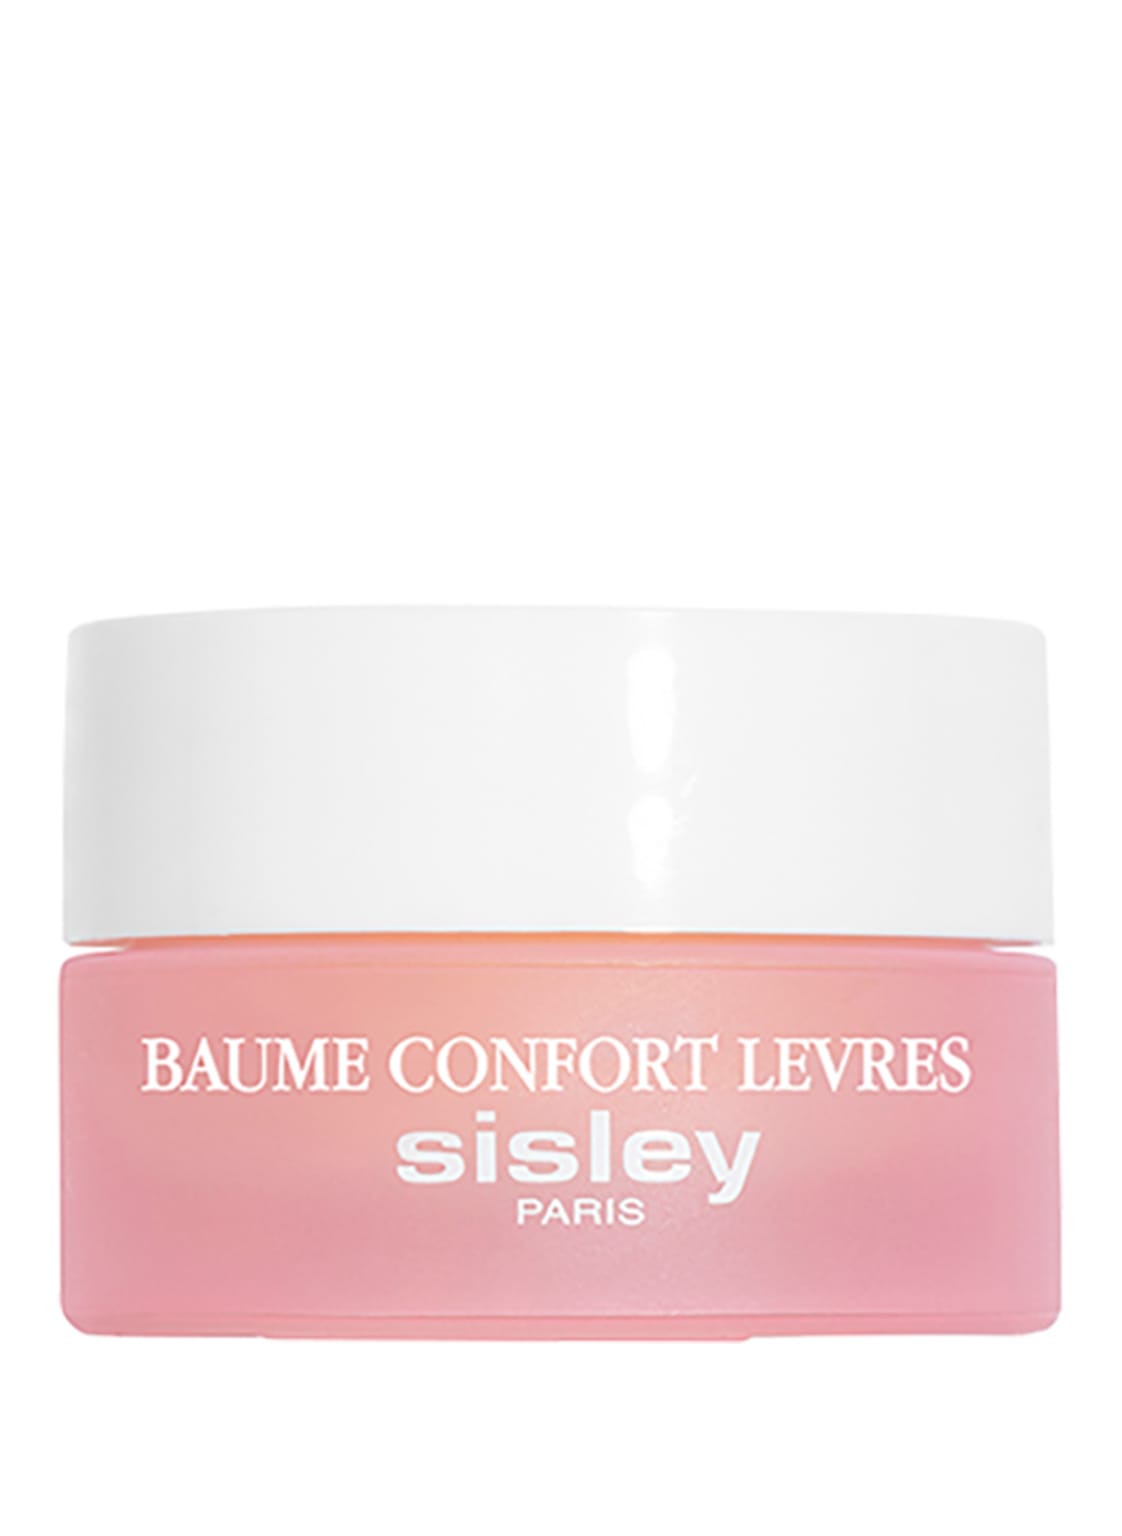 Image of Sisley Paris Baume Confort Lèvres Lippenpflege 9 g